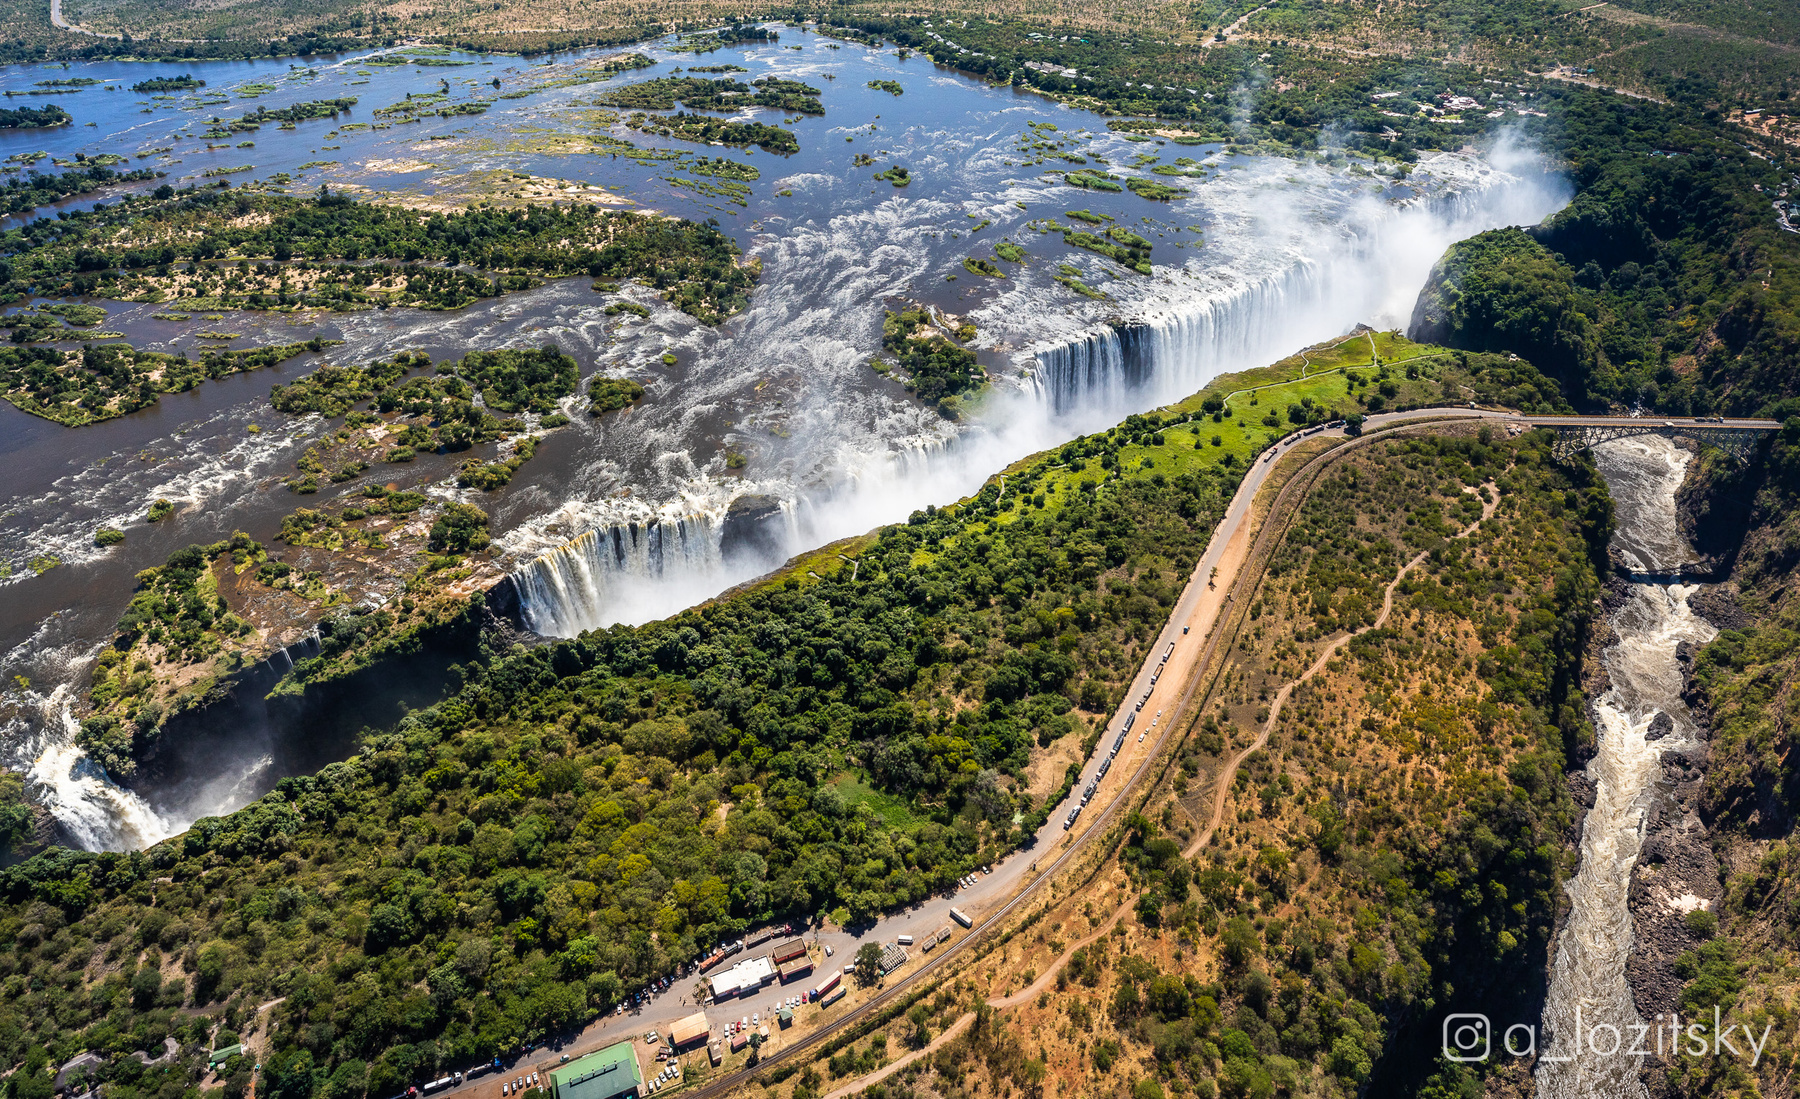 Victoria Falls 